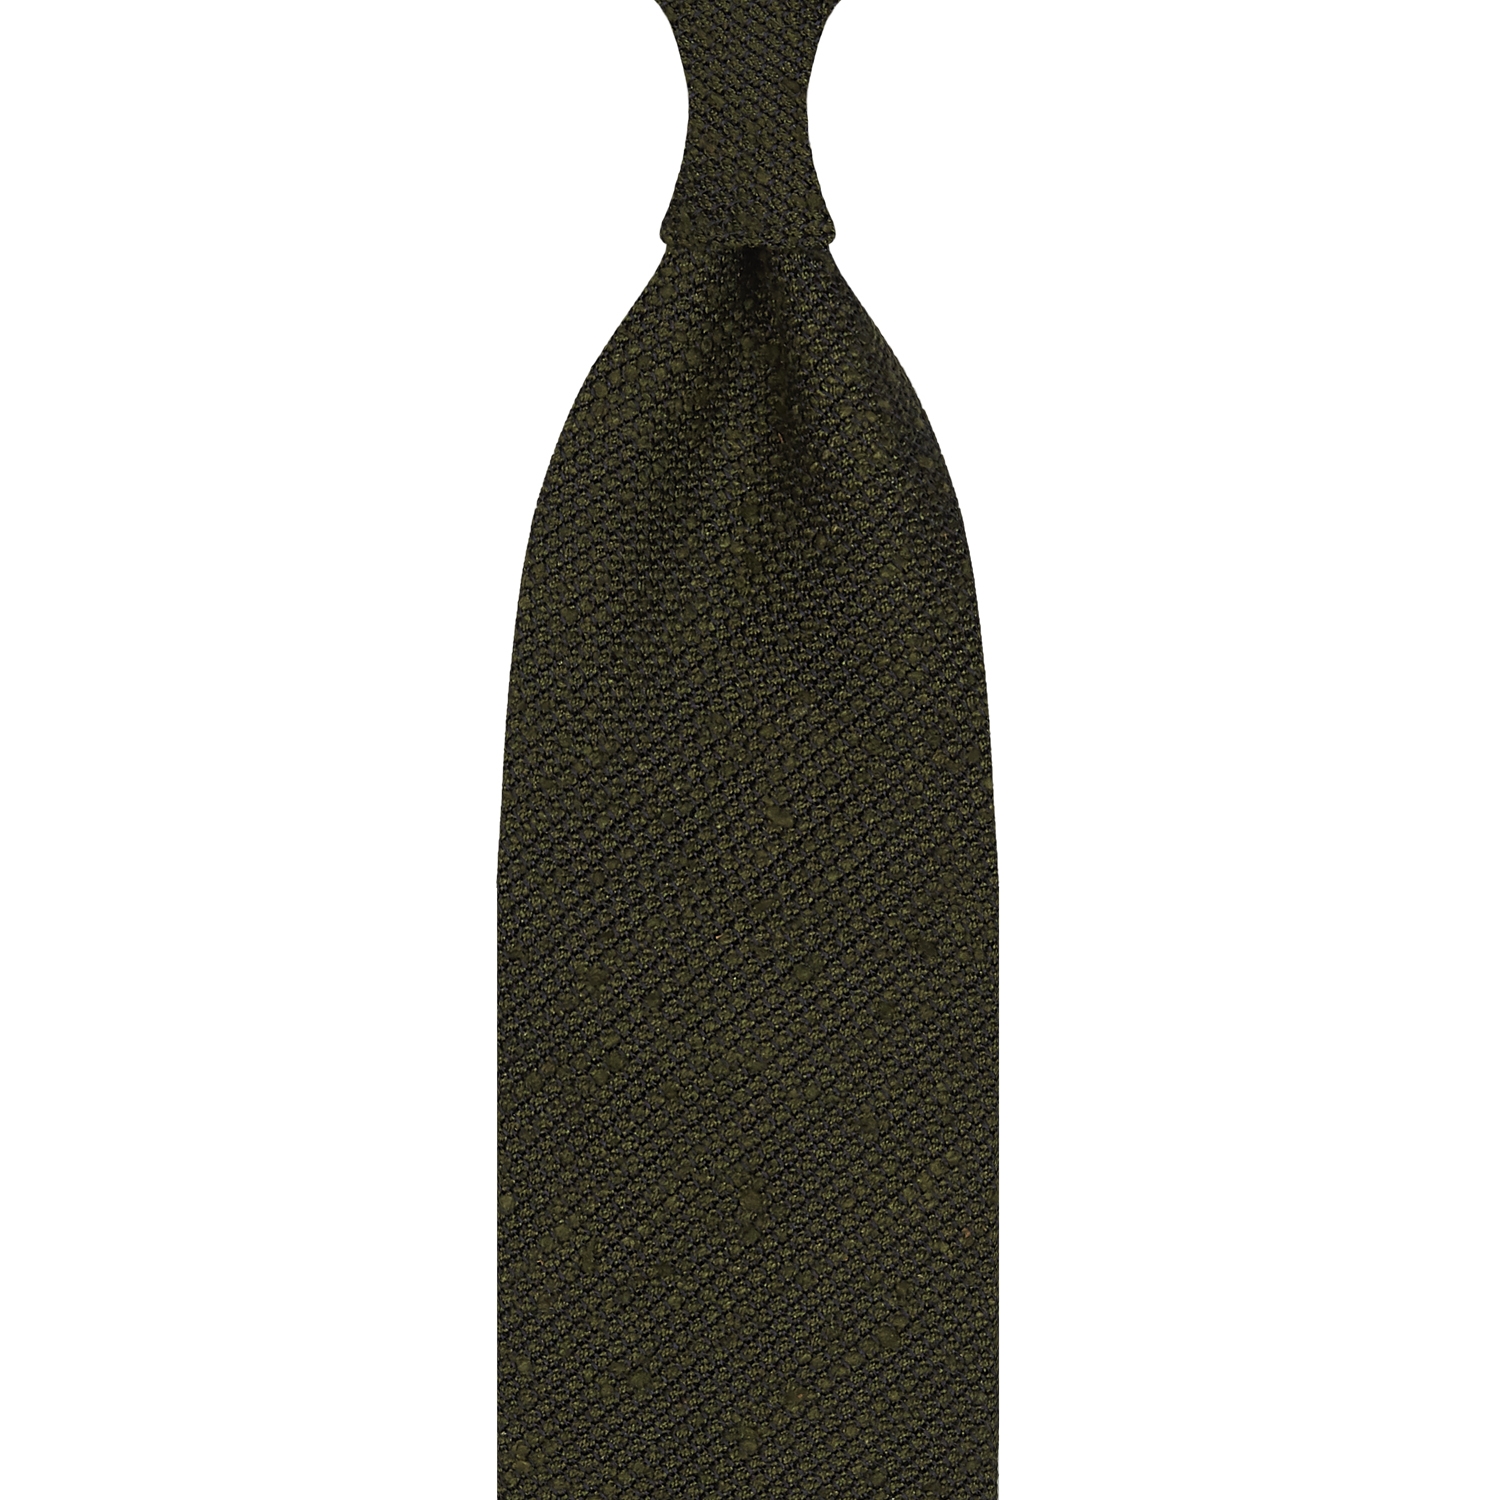 Cravate en grenadine de soie shantung vert armée, roulée à la main - 3 plis